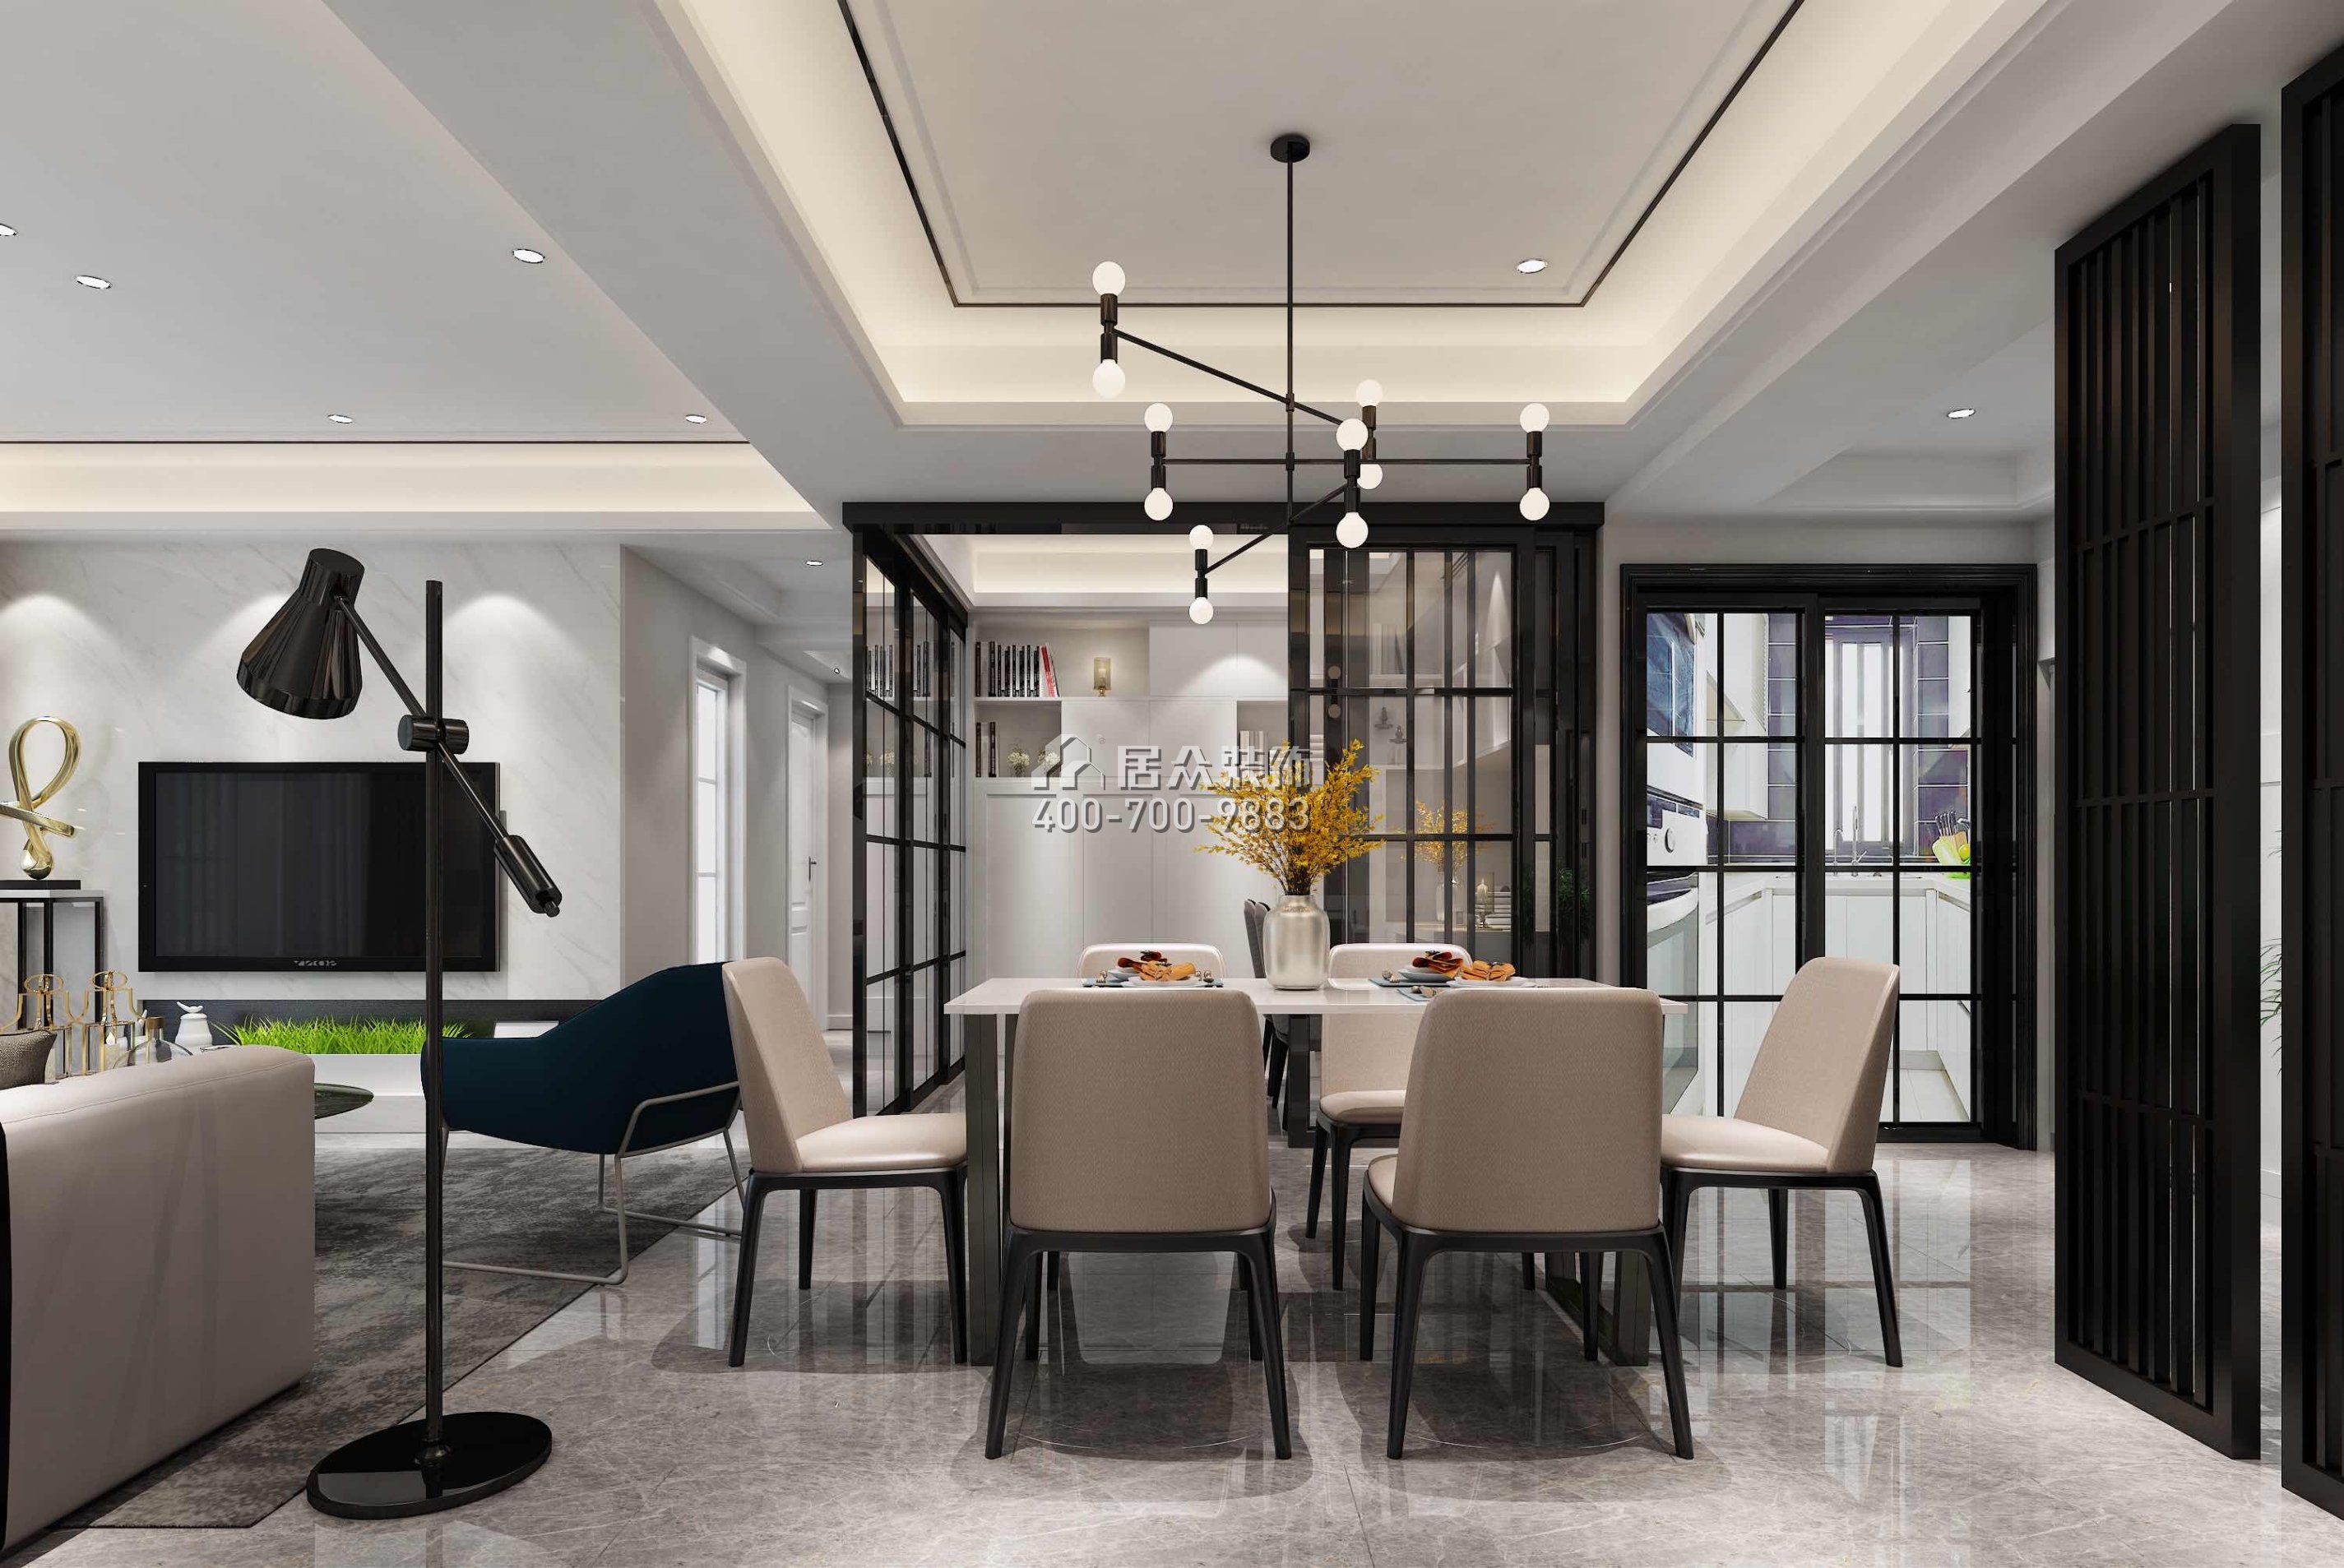 博林天瑞89平方米現代簡約風格平層戶型客餐廳一體裝修效果圖